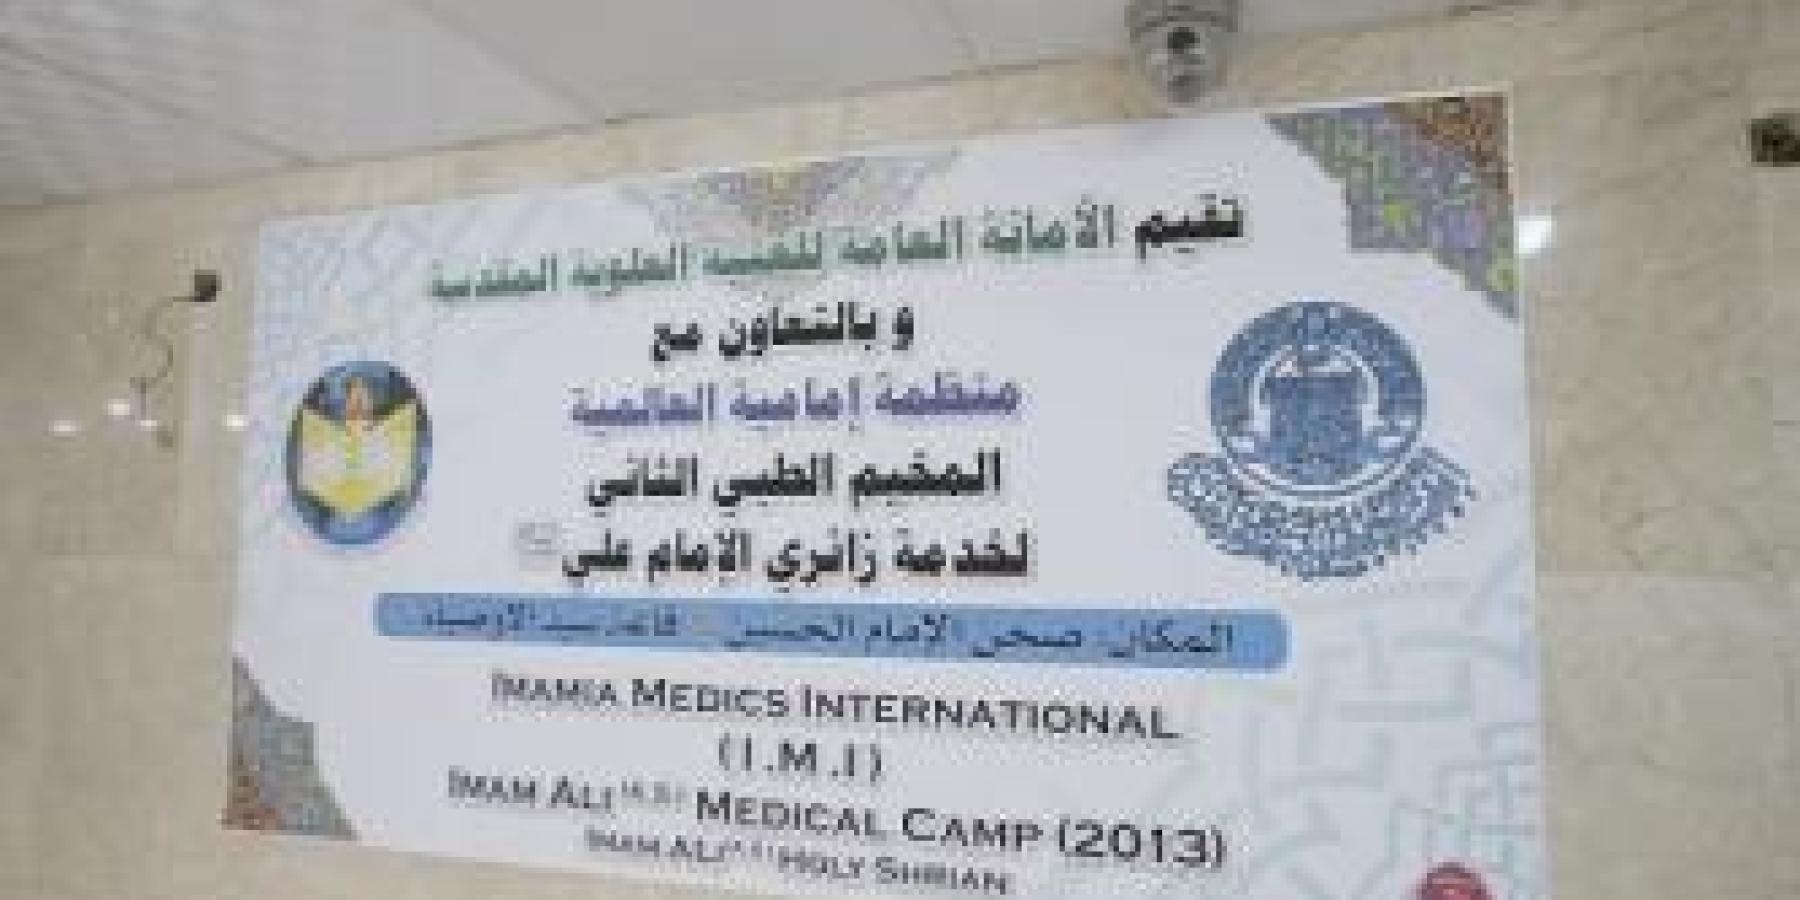 الامانة العامة للعتبة العلوية المقدسة تقيم المخيم الطبي الثاني بالتعاون مع منظمة (إمامية) العالمية لتقديم الخدمات الطبية المجانية